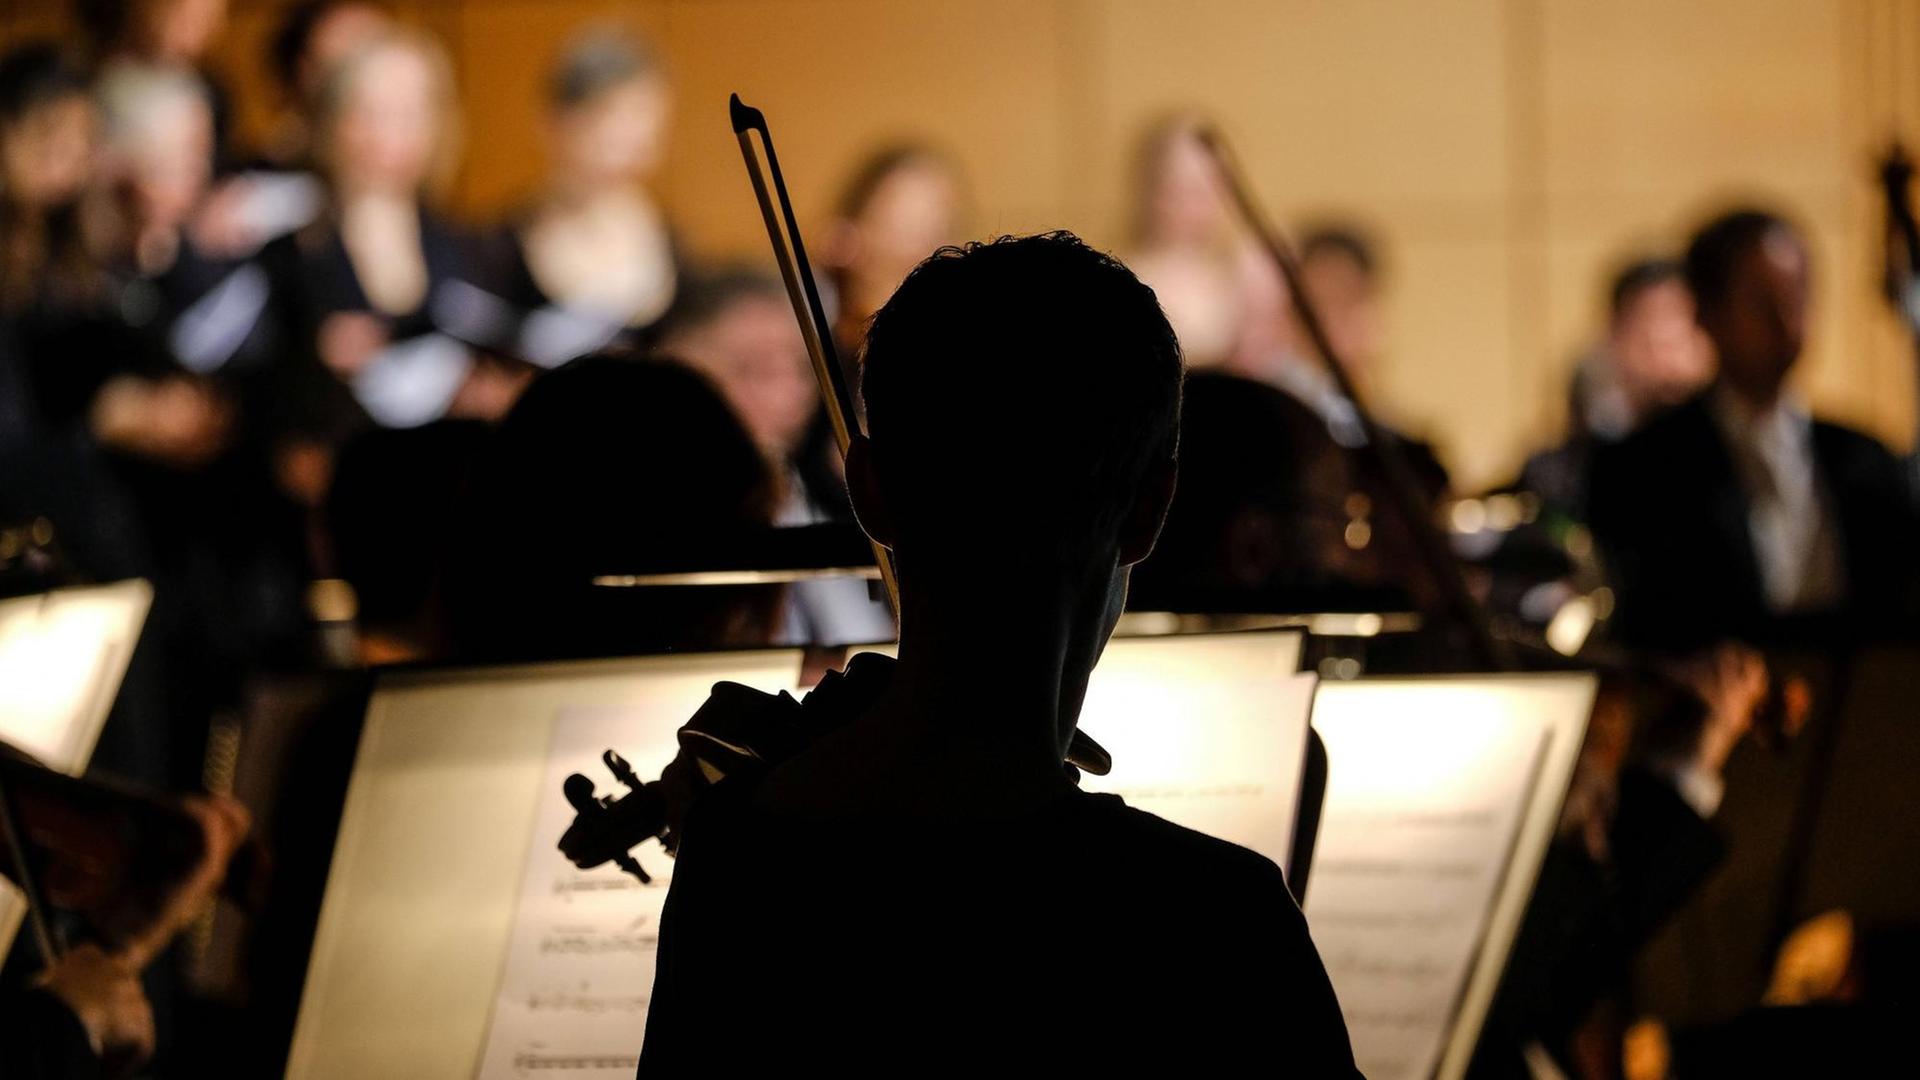 Orchester, ein Musiker als schwarze Silhouette von hinten.